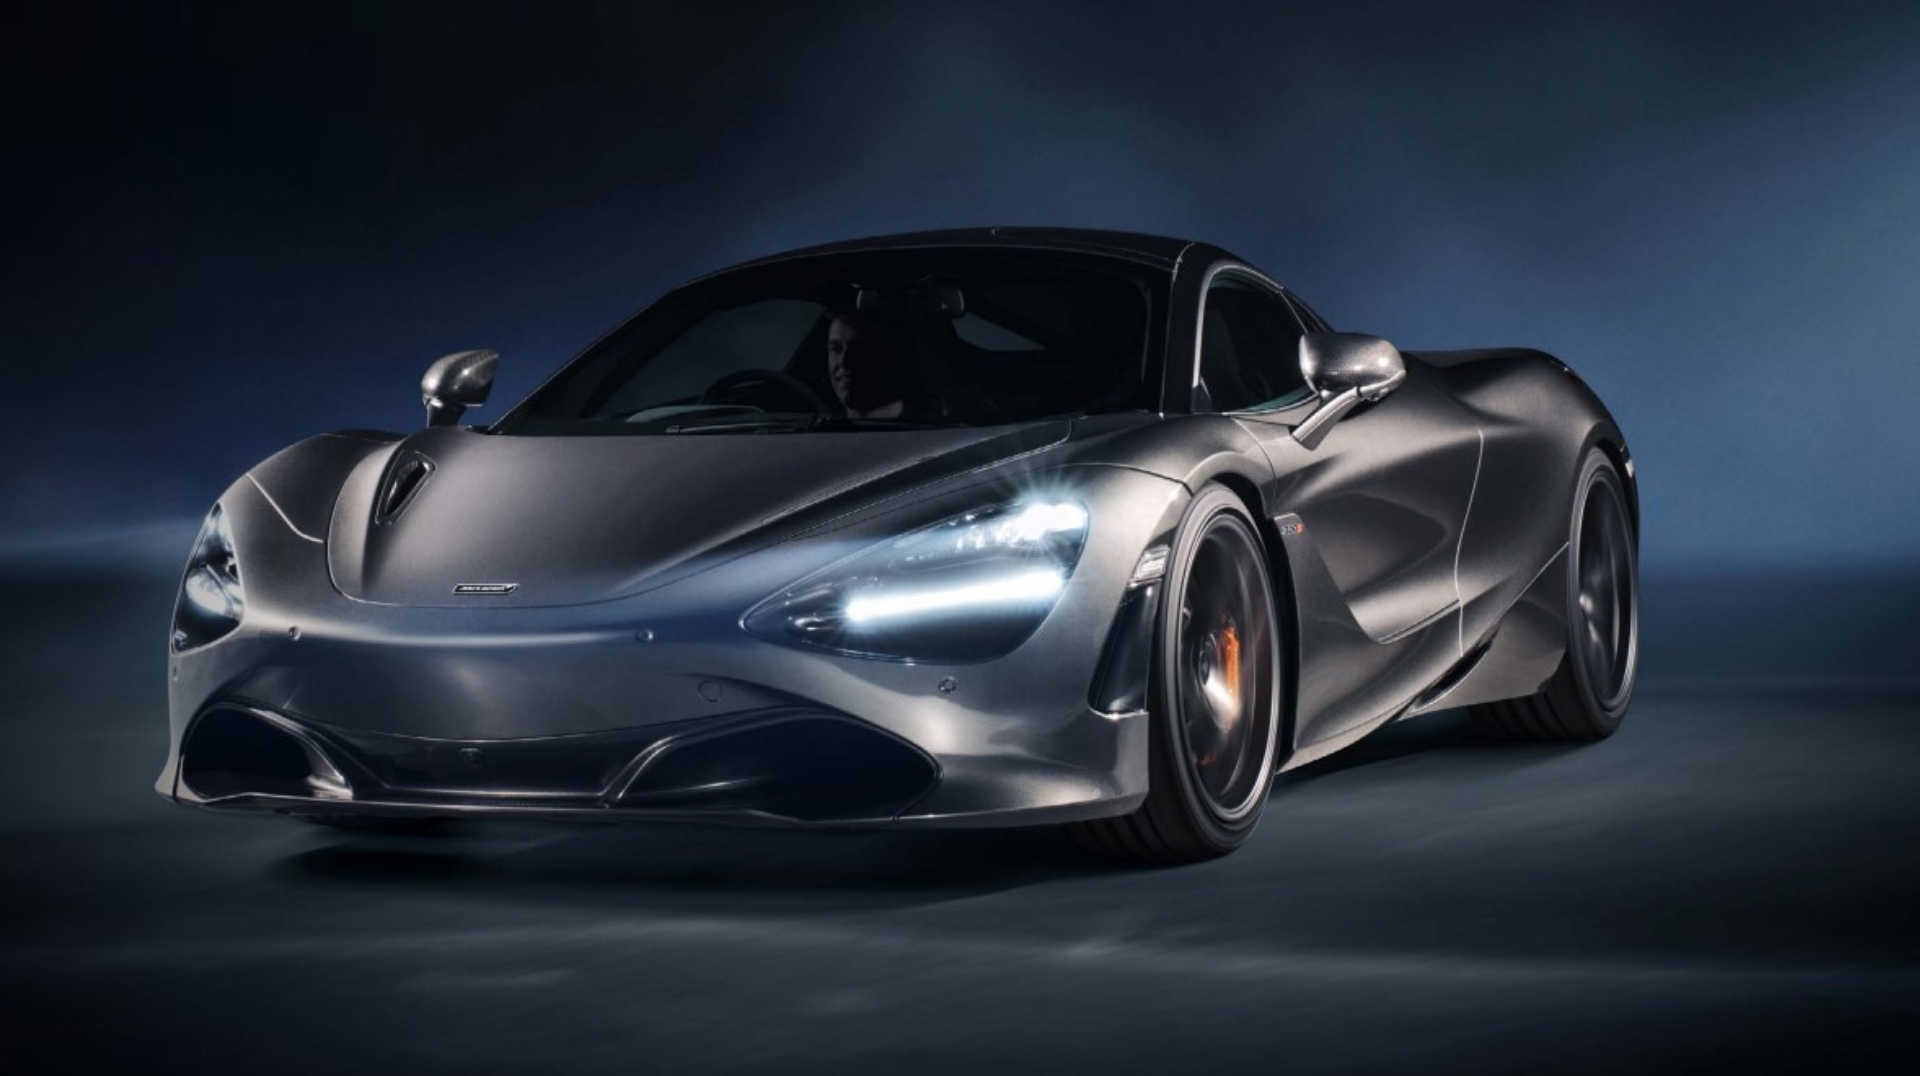 Estos automóviles deportivos alcanzan velocidades superiores a los 330 km/h. (Foto de referencia: McLaren)